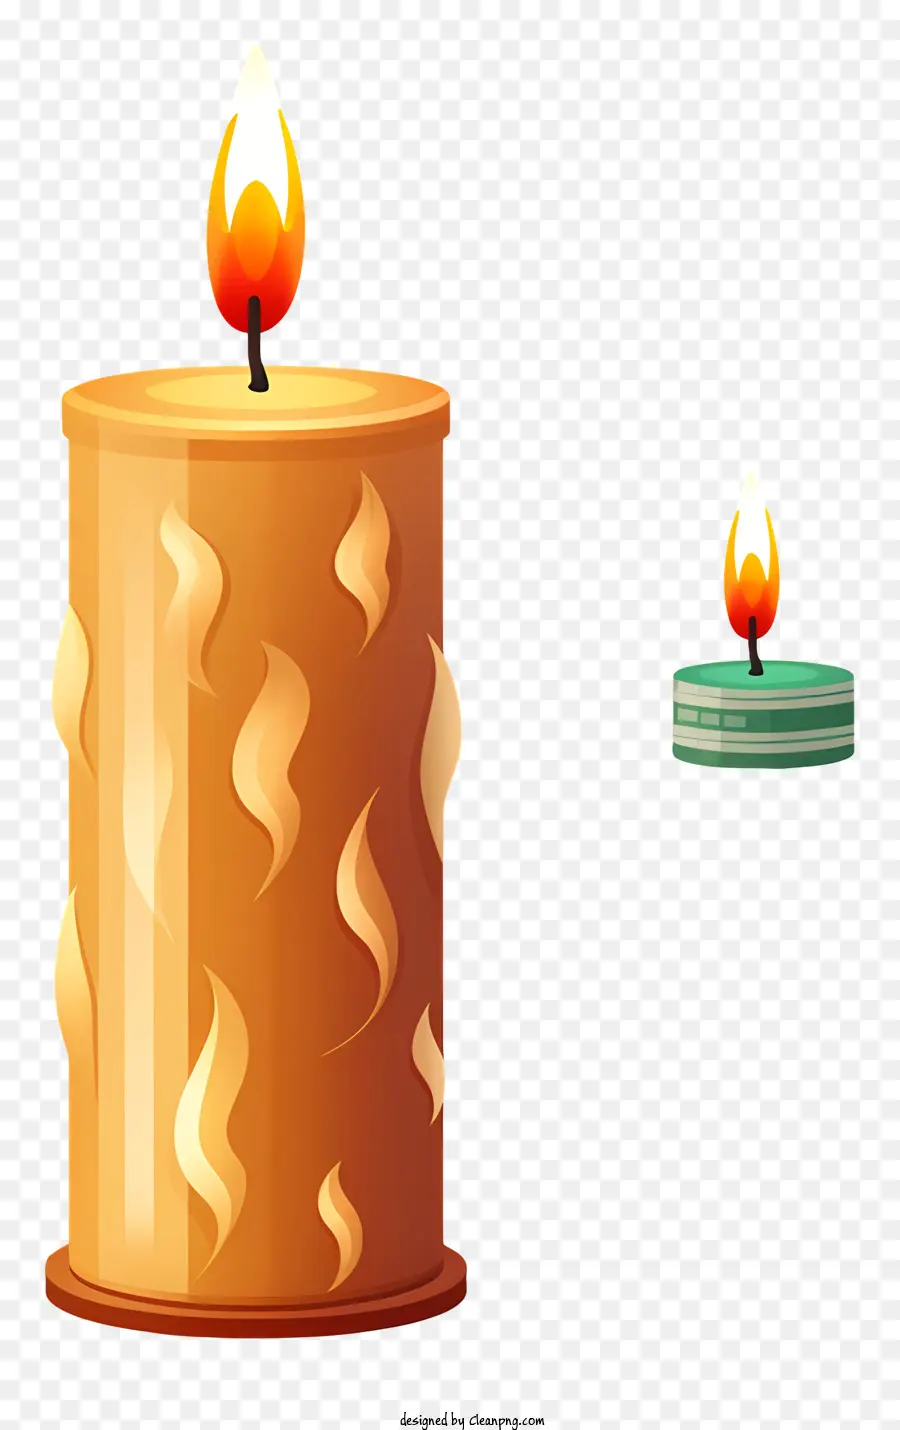 Leuchte Kerzenflackern Flammen Holz Kerze warmer gelber Farbton Kühle orange Flammen - Zeuchte Kerze mit flackernden Flammen in 3D